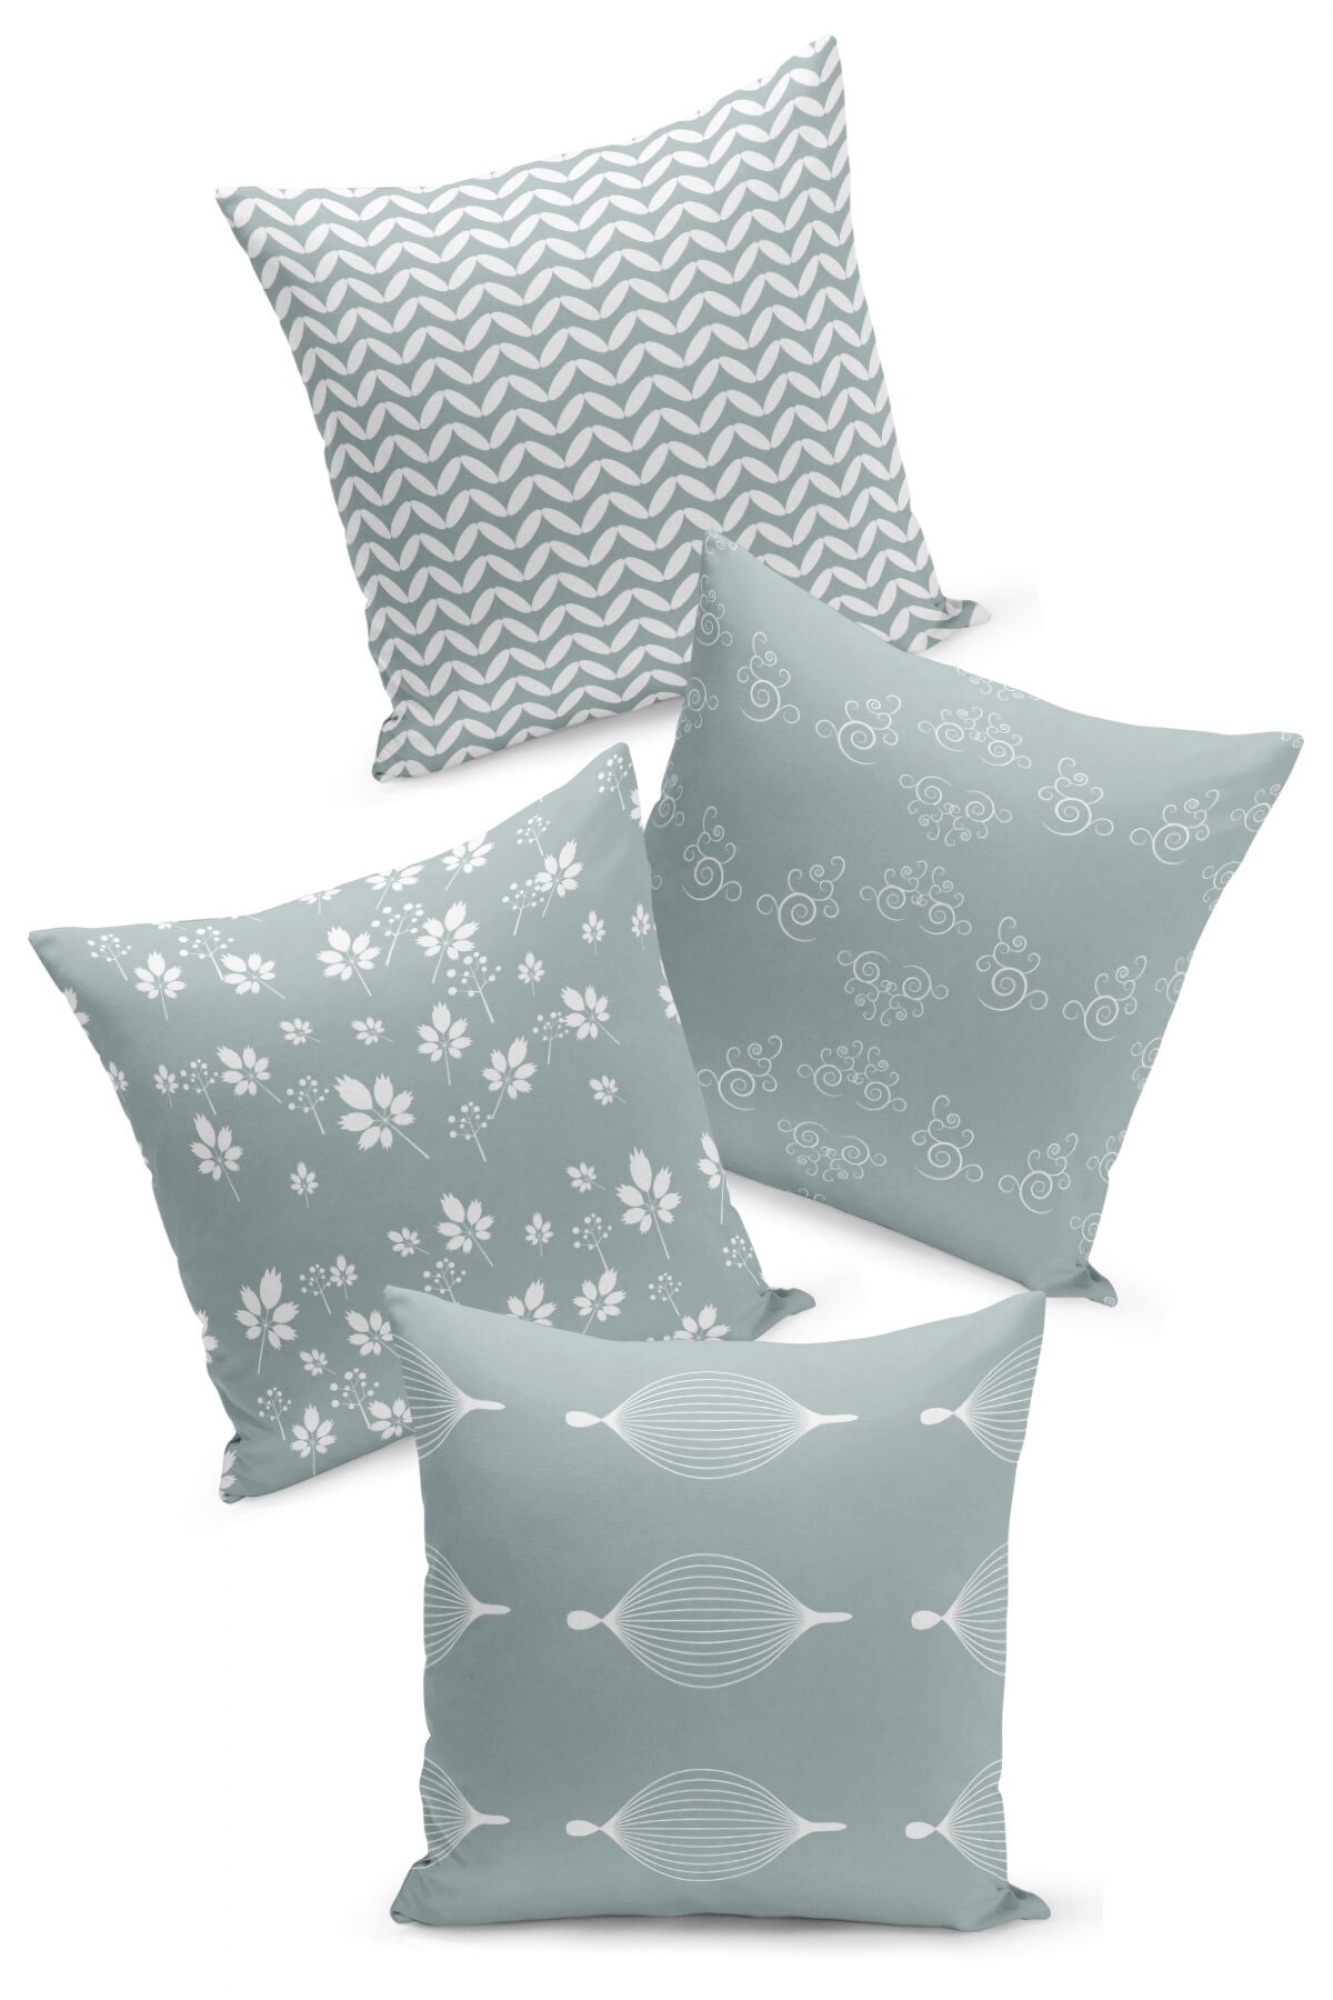 Pillowcases - Set of 4 Designated